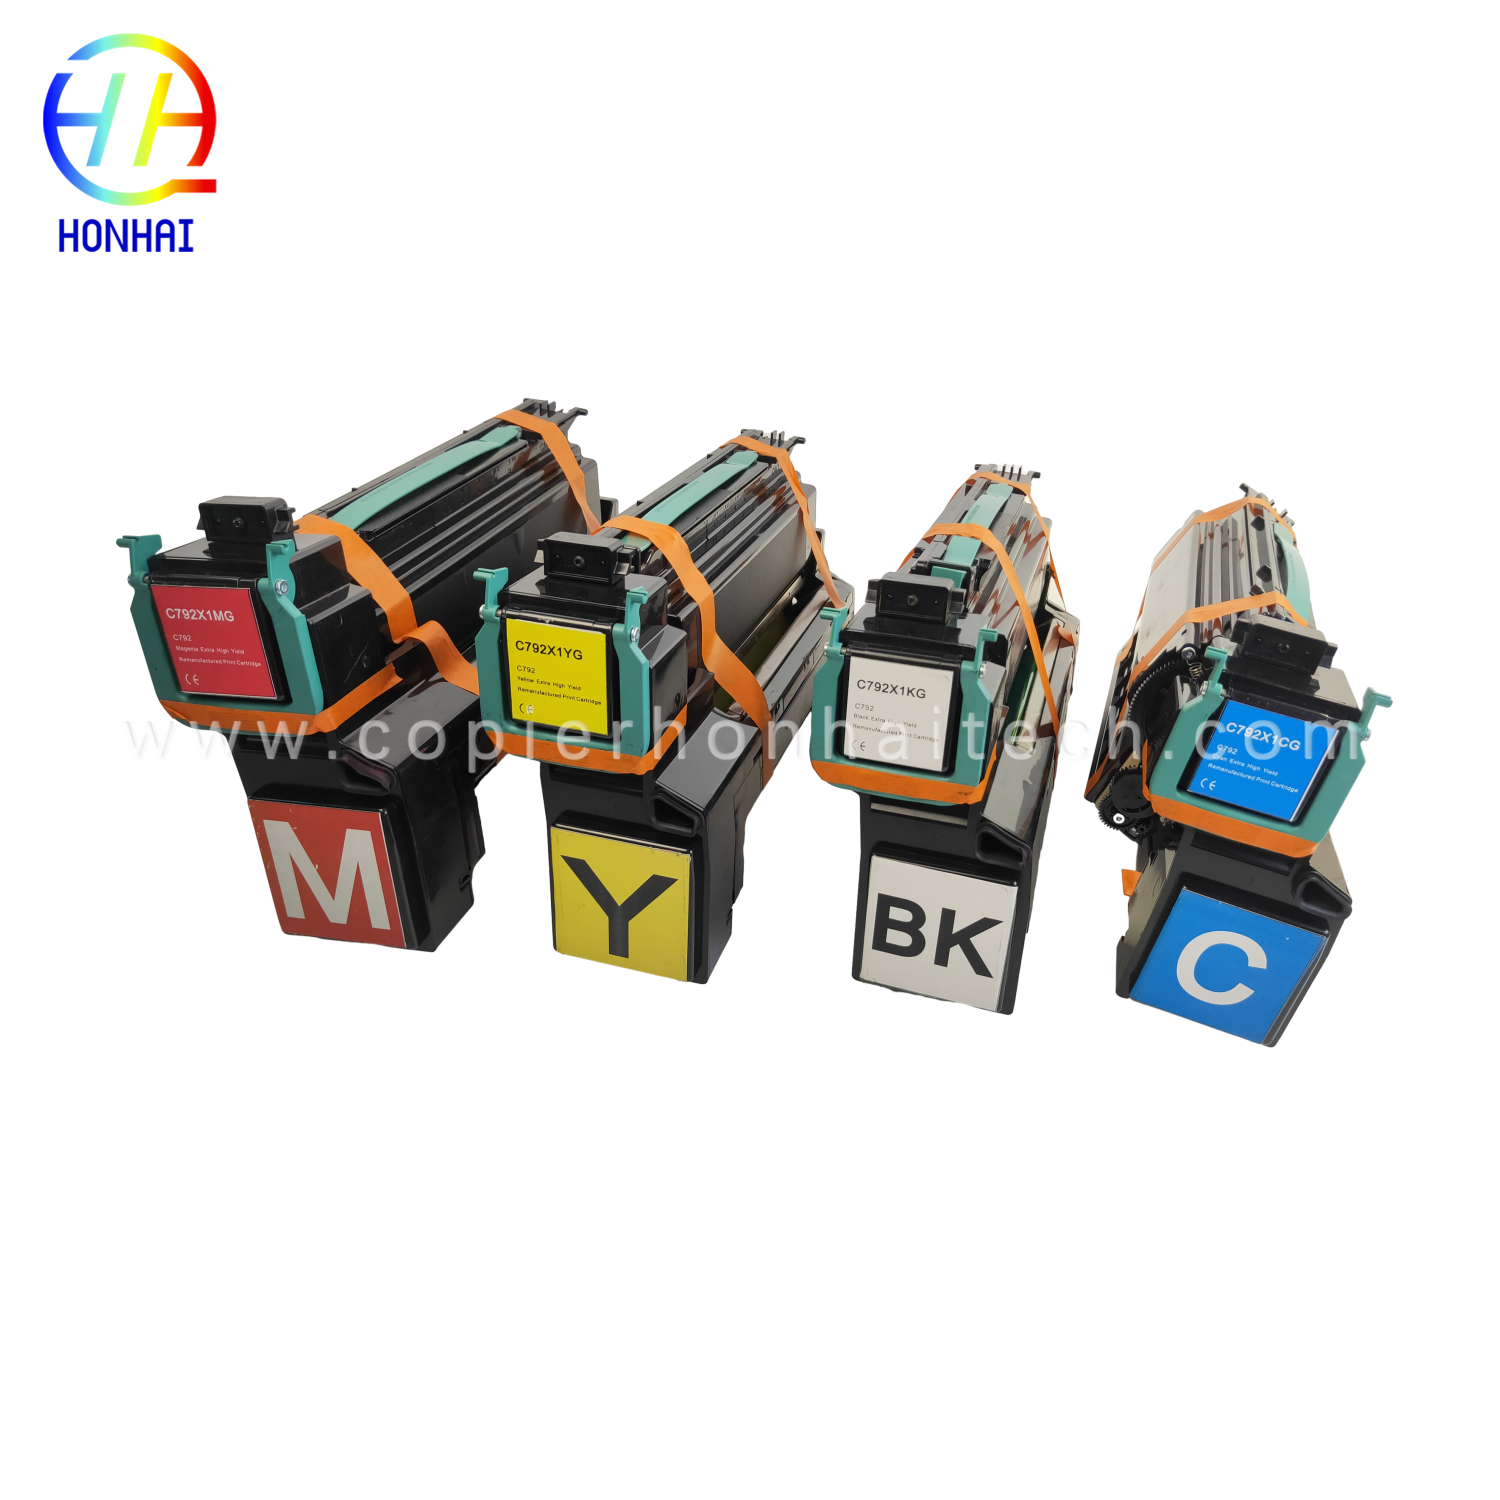 https://www.copierhonhaitech.com/toner-cartridge-set-voor-lexmark-c792de-c792x1-product/